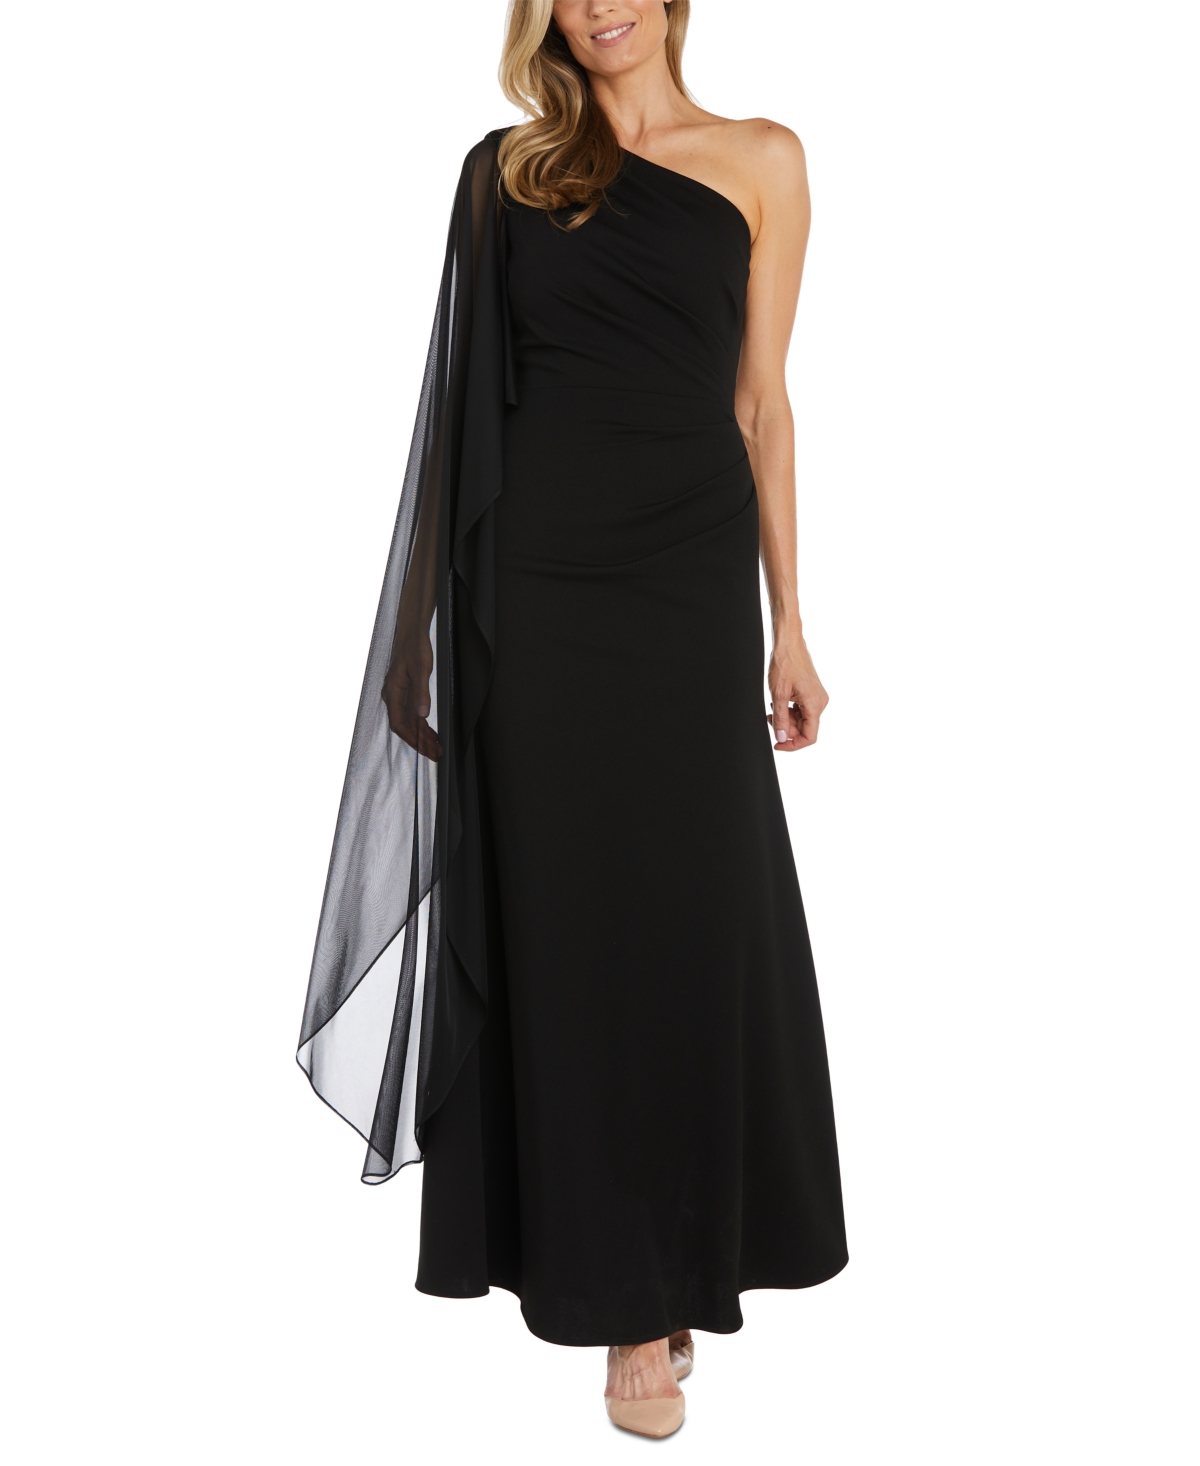 Women's One-Shoulder Cape Gown - Black